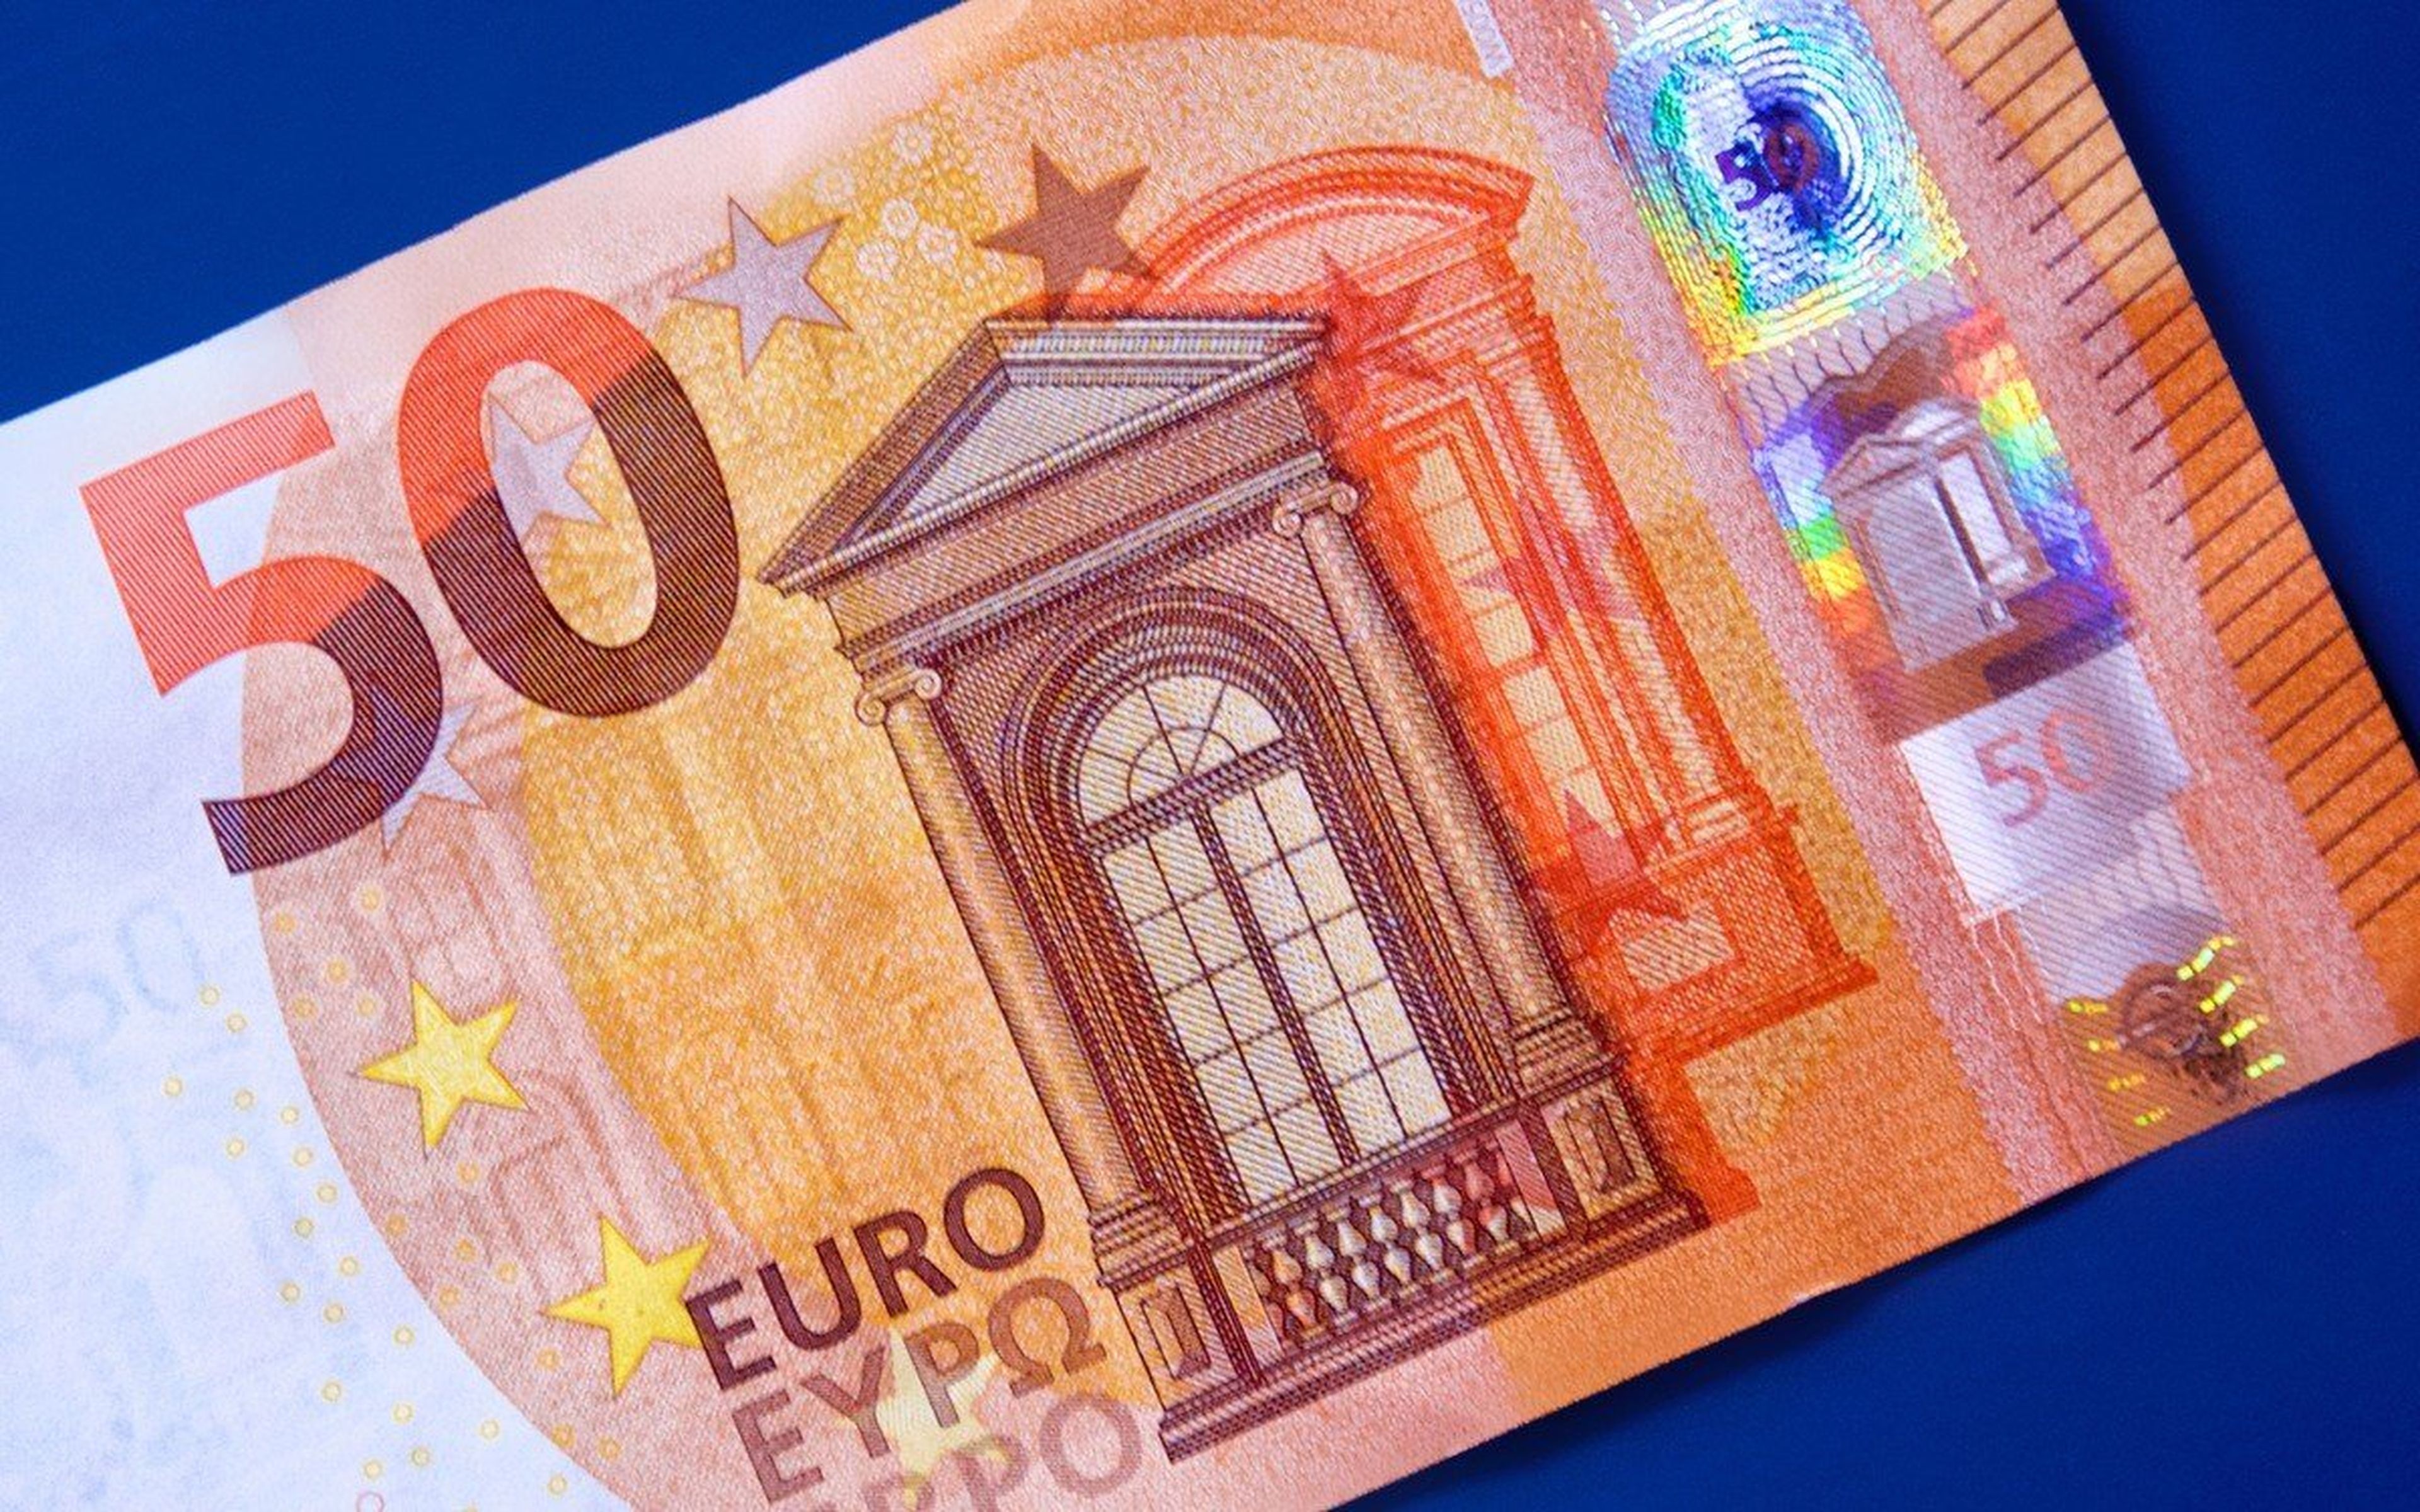 Cuatro cosas inteligentes que puedes hacer con 50 euros, según los expertos en finanzas